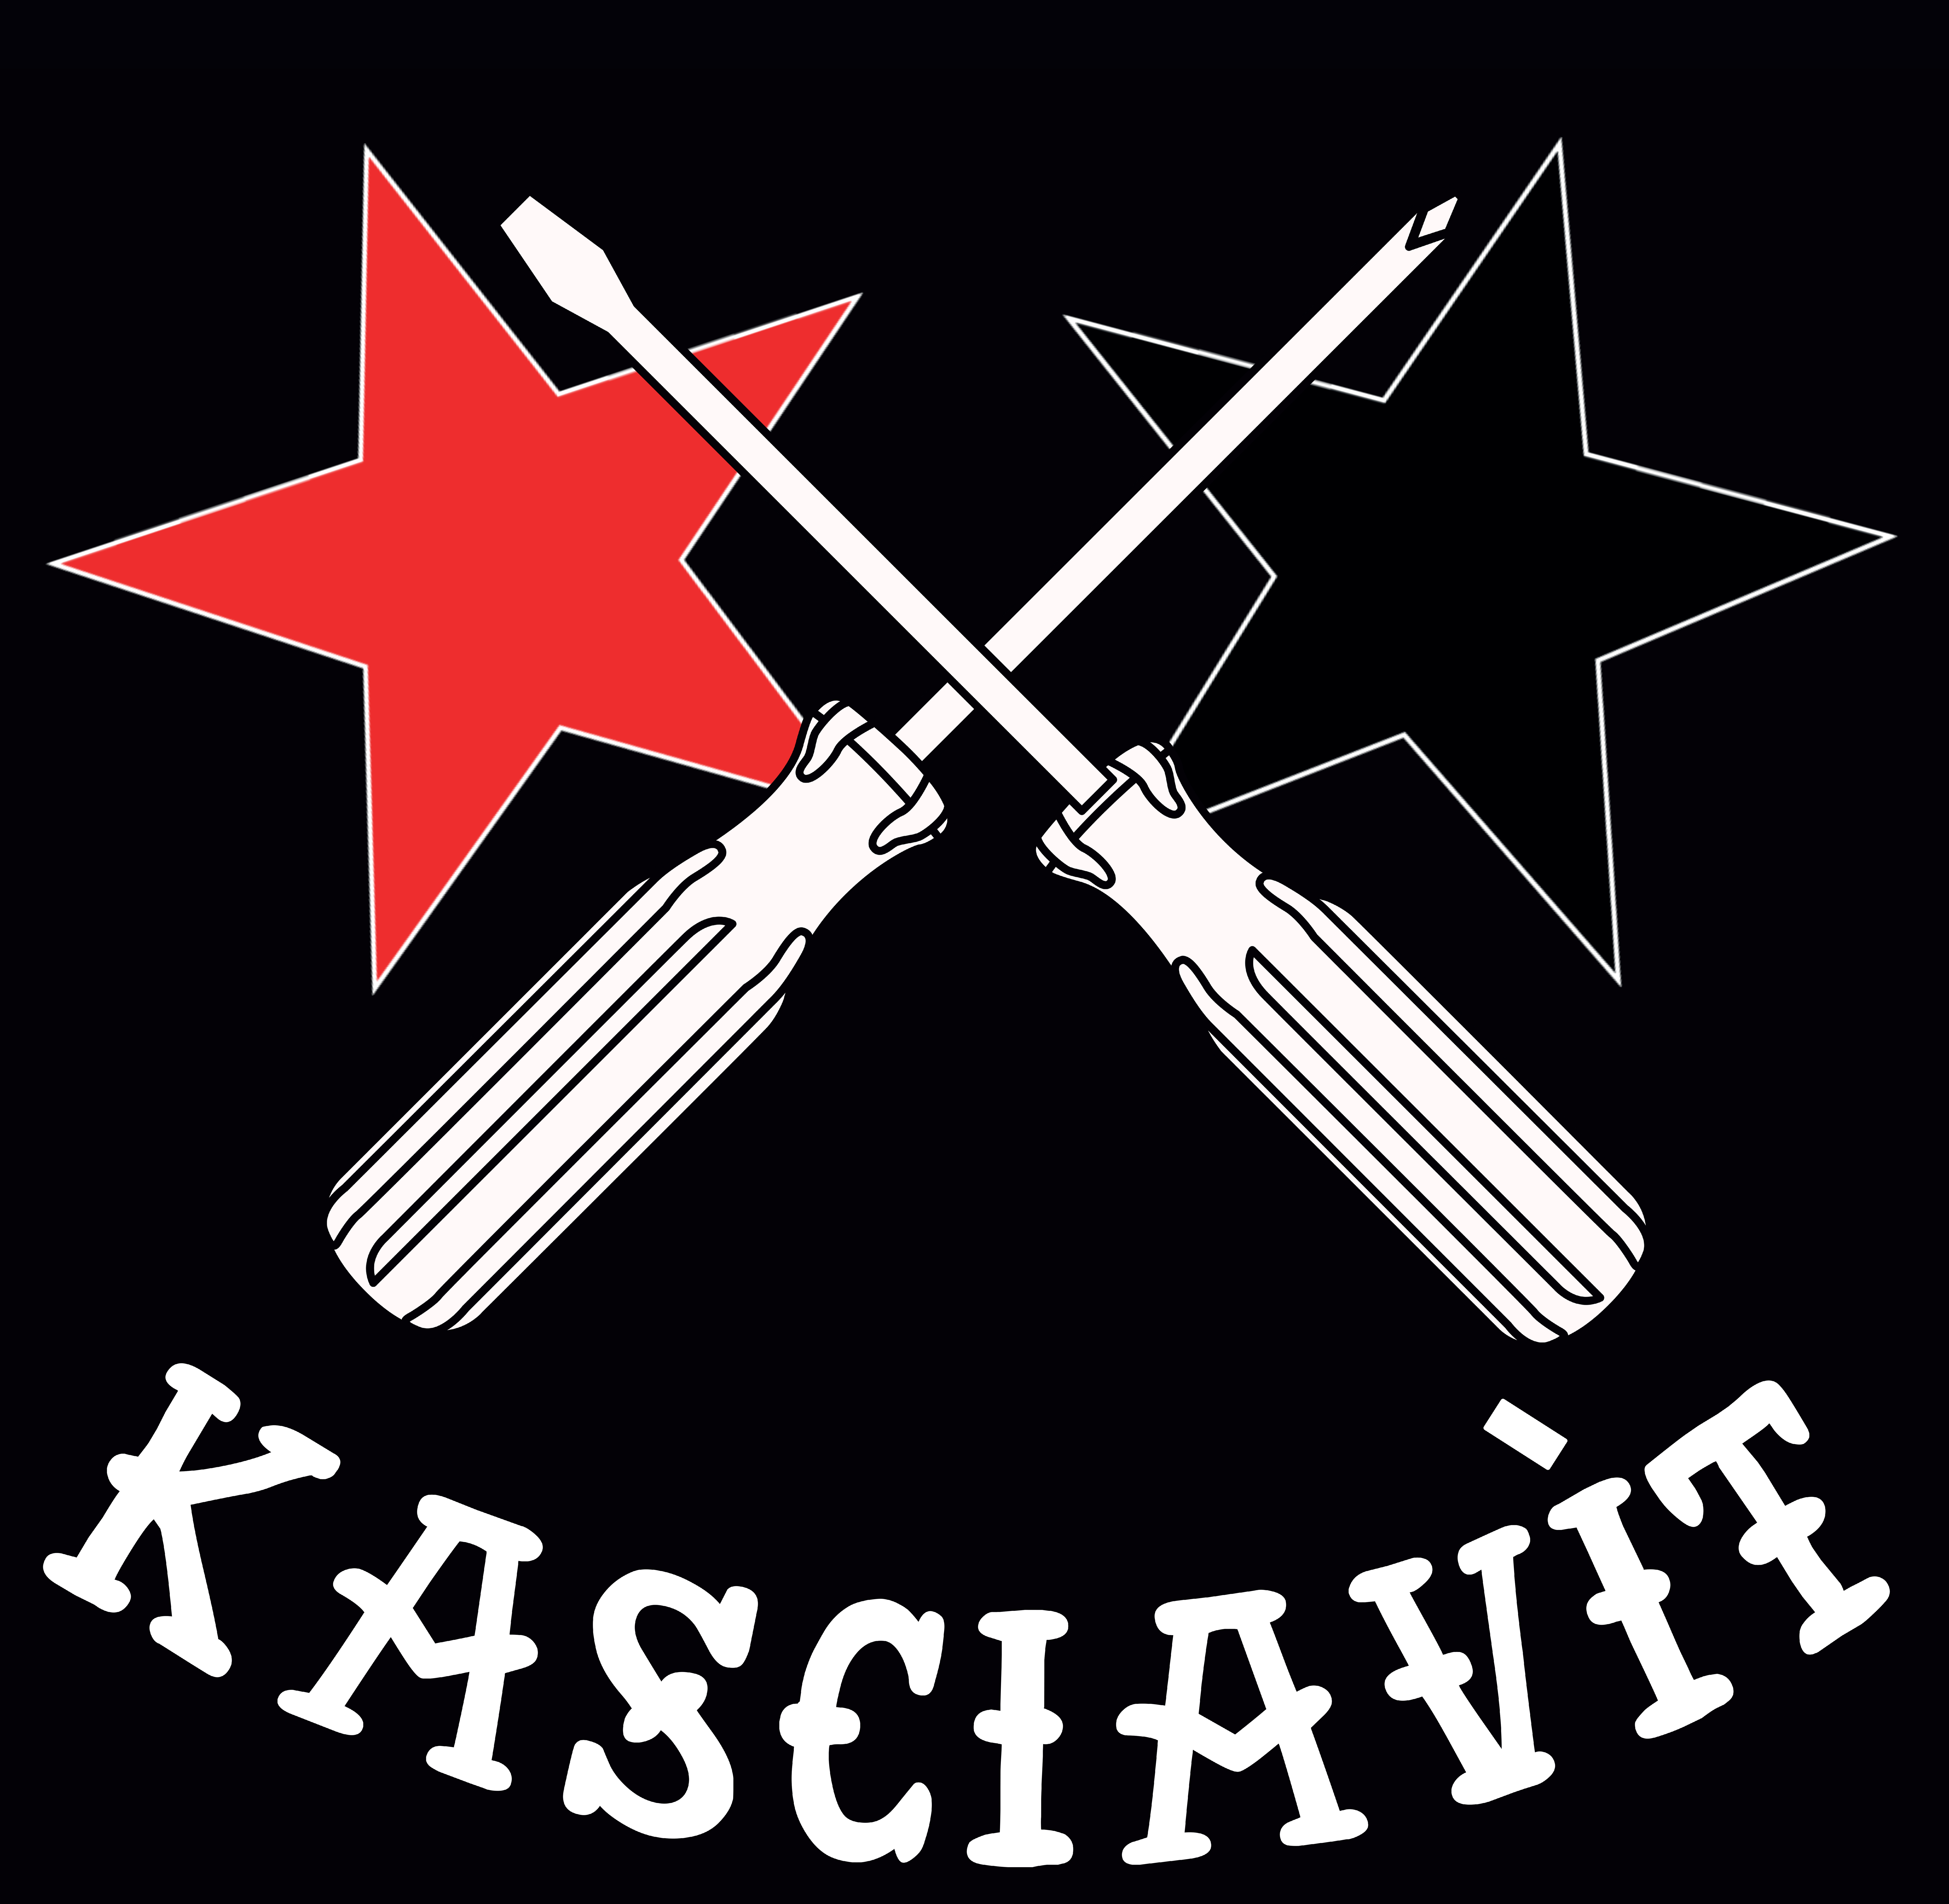 collettivo + '-' + kasciavit-prospero-editore